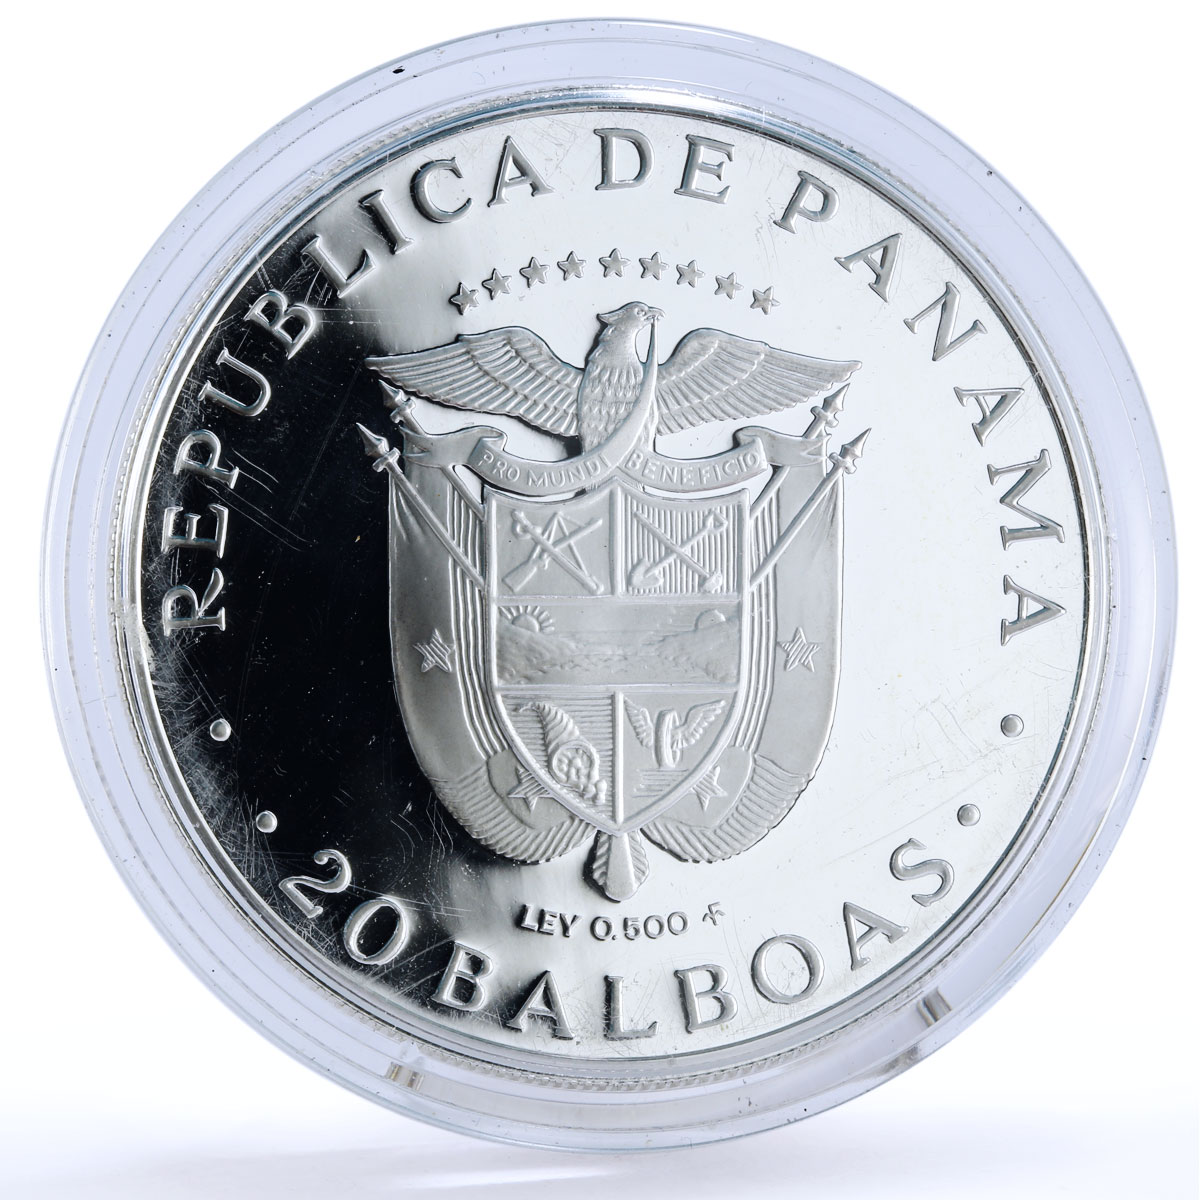 Panama 20 balboas Bicentennial of Simon Bolivar Politics silver coin 1985